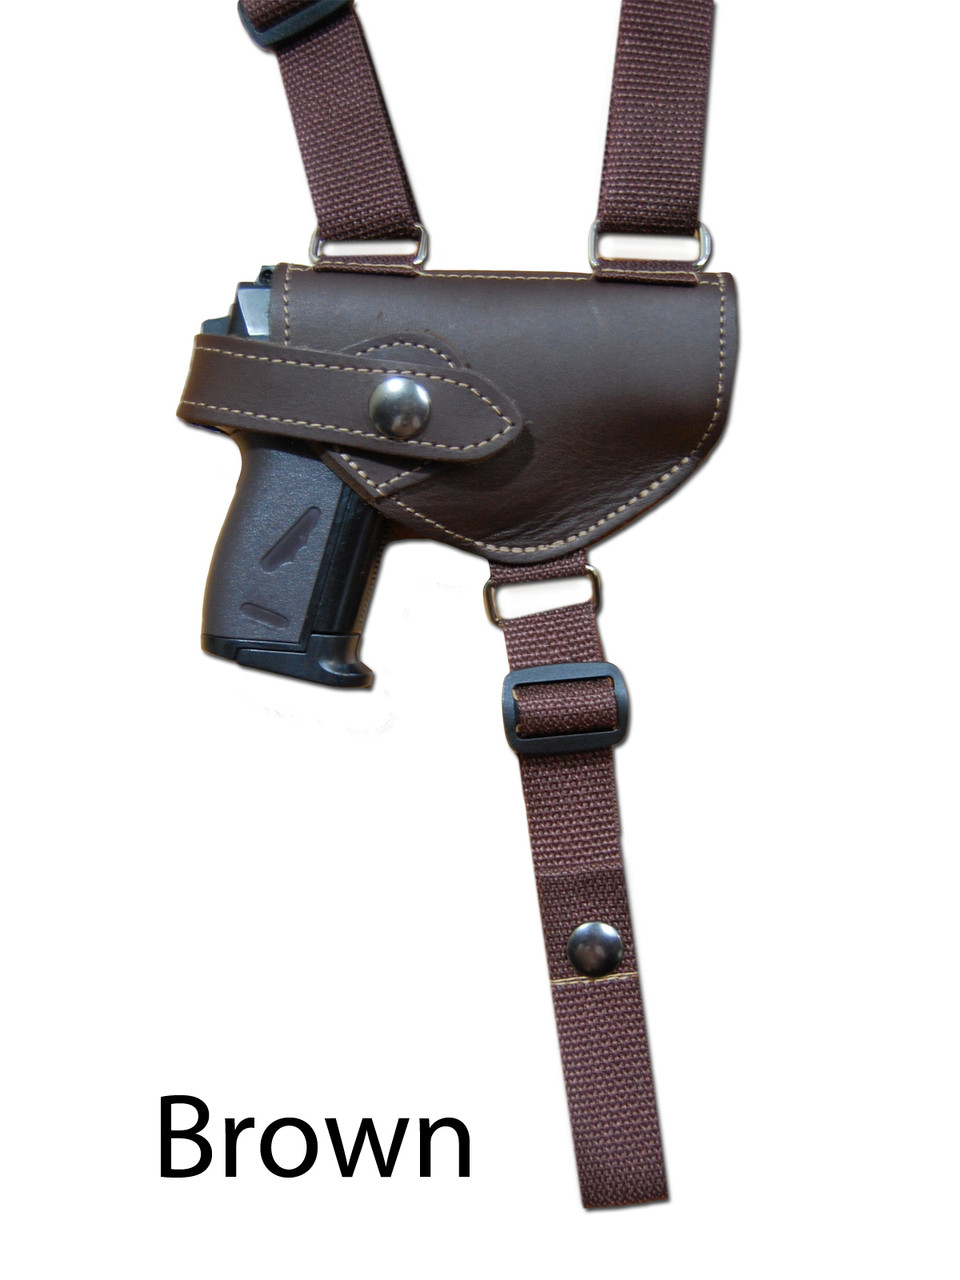 brown leather shoulder holster